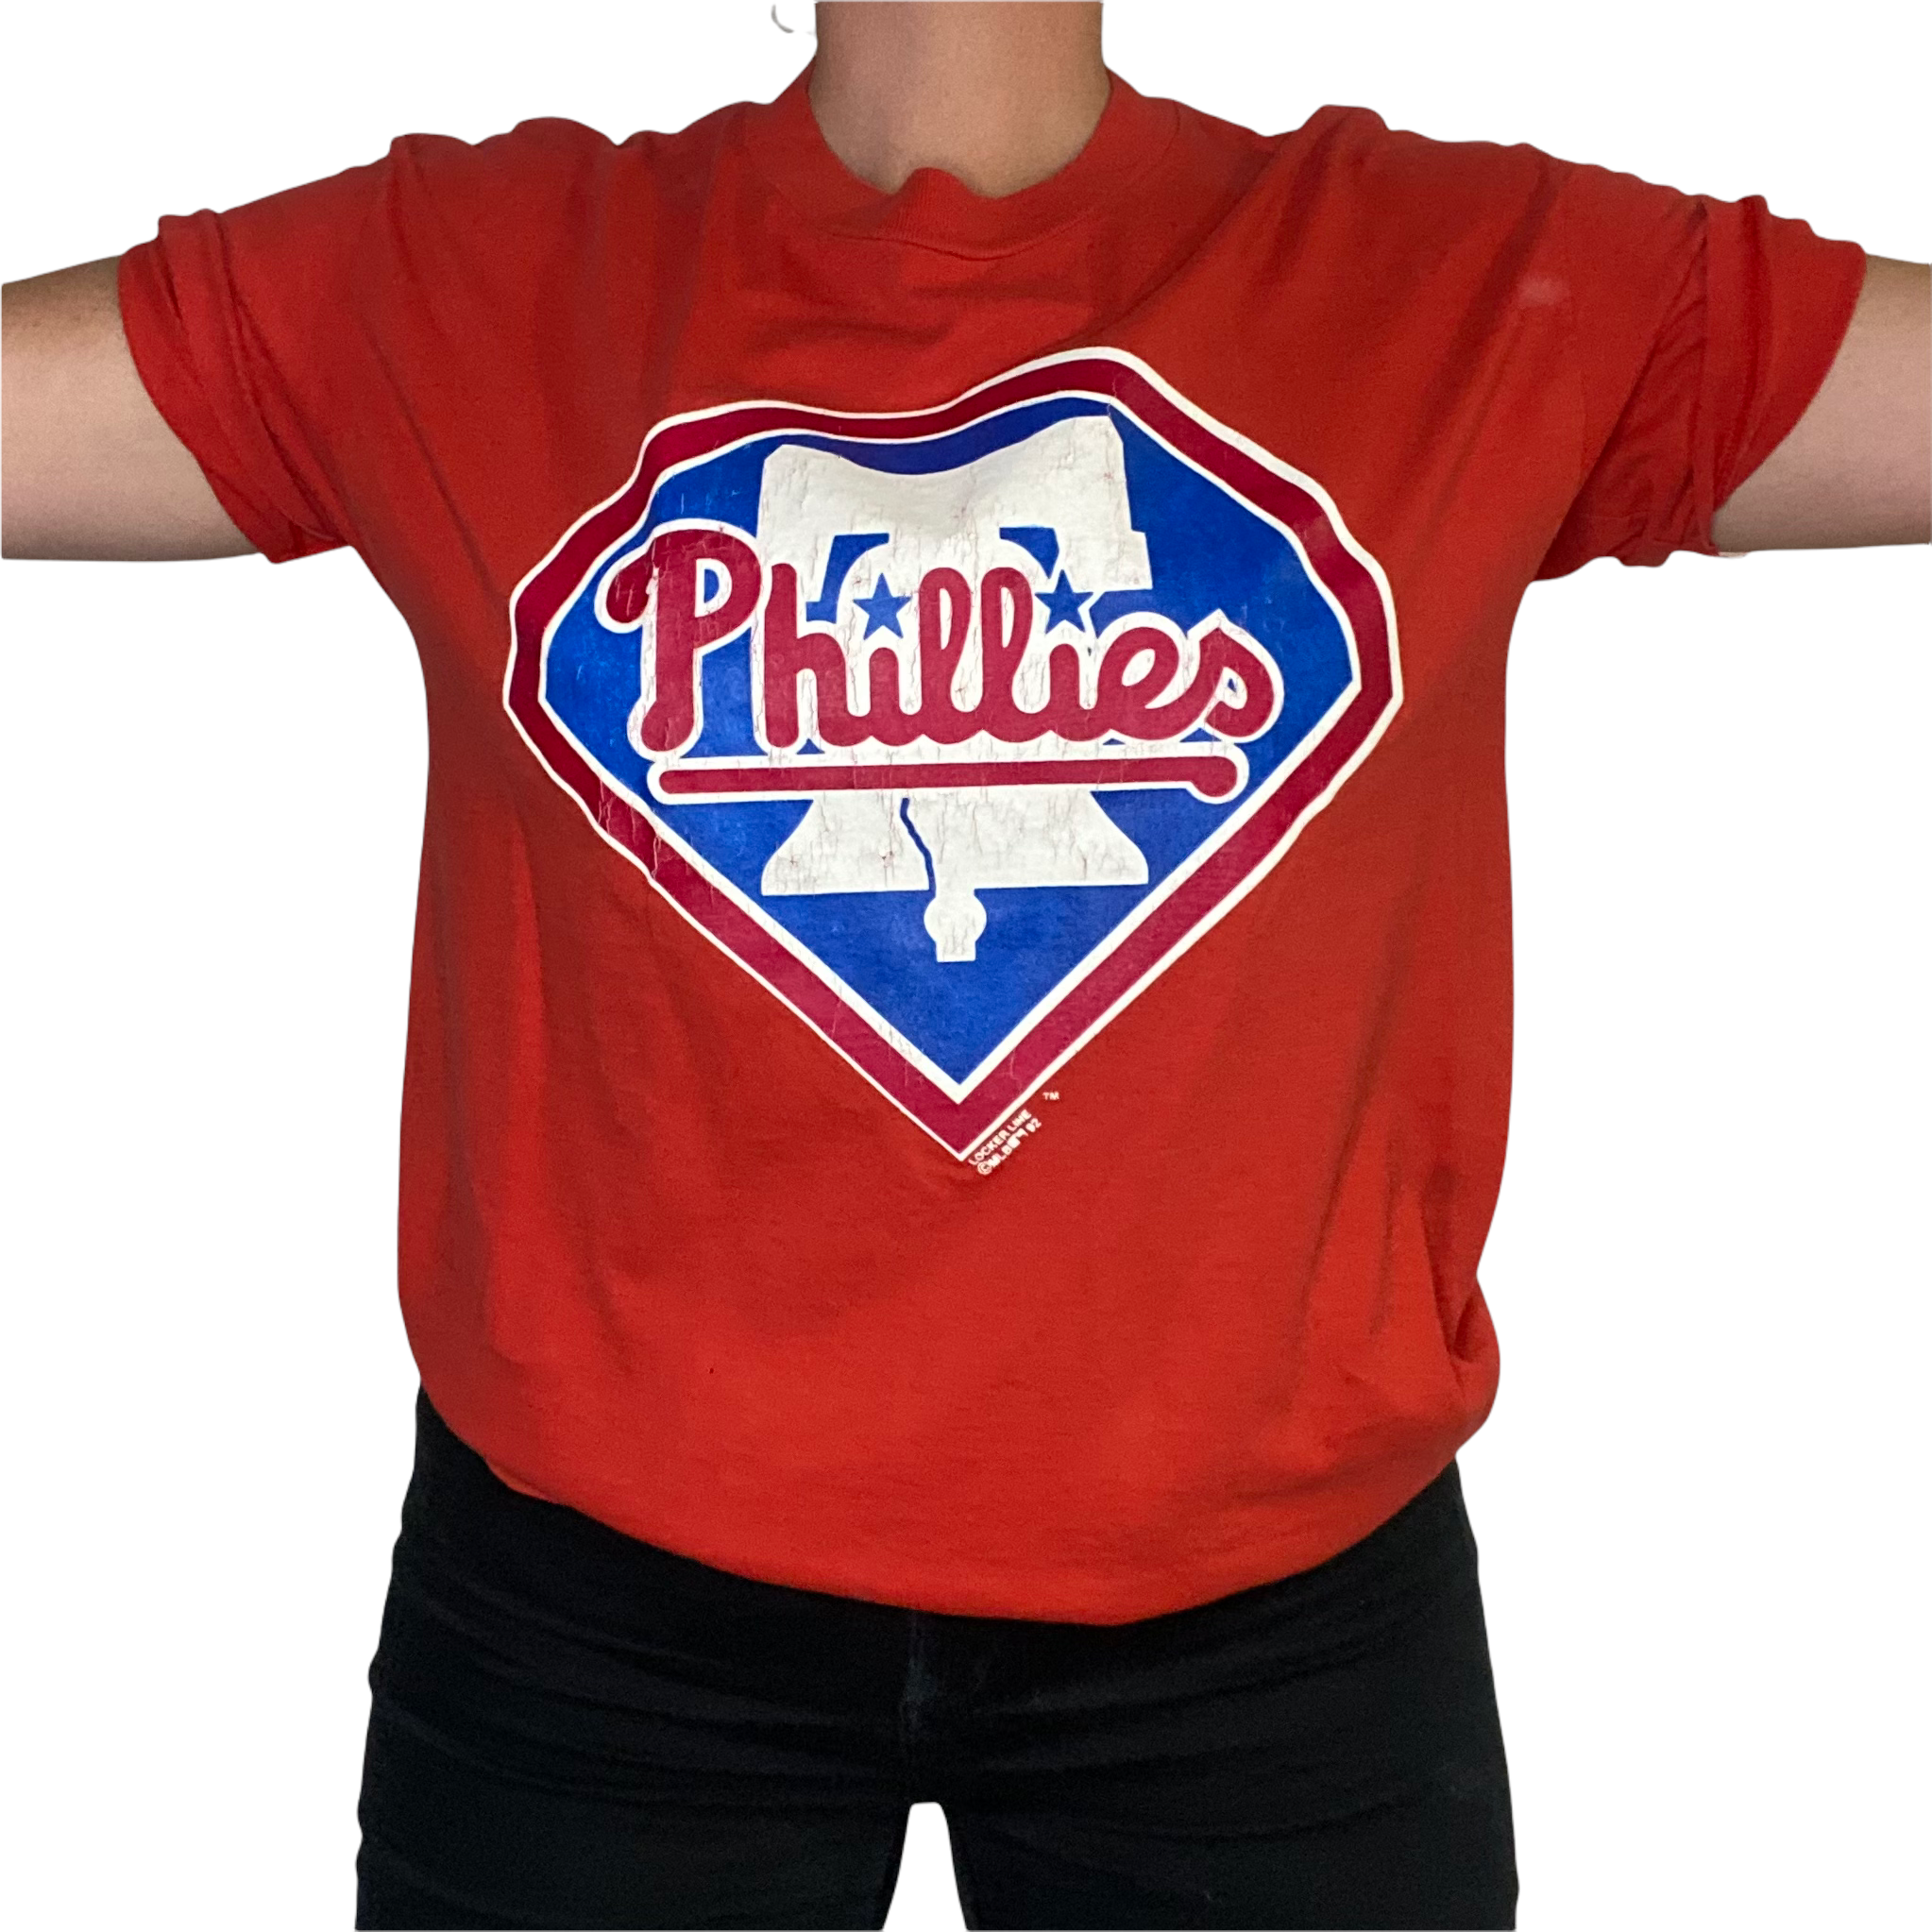 Vintage Philadelphia Phillies Sweatshirt (1994) 